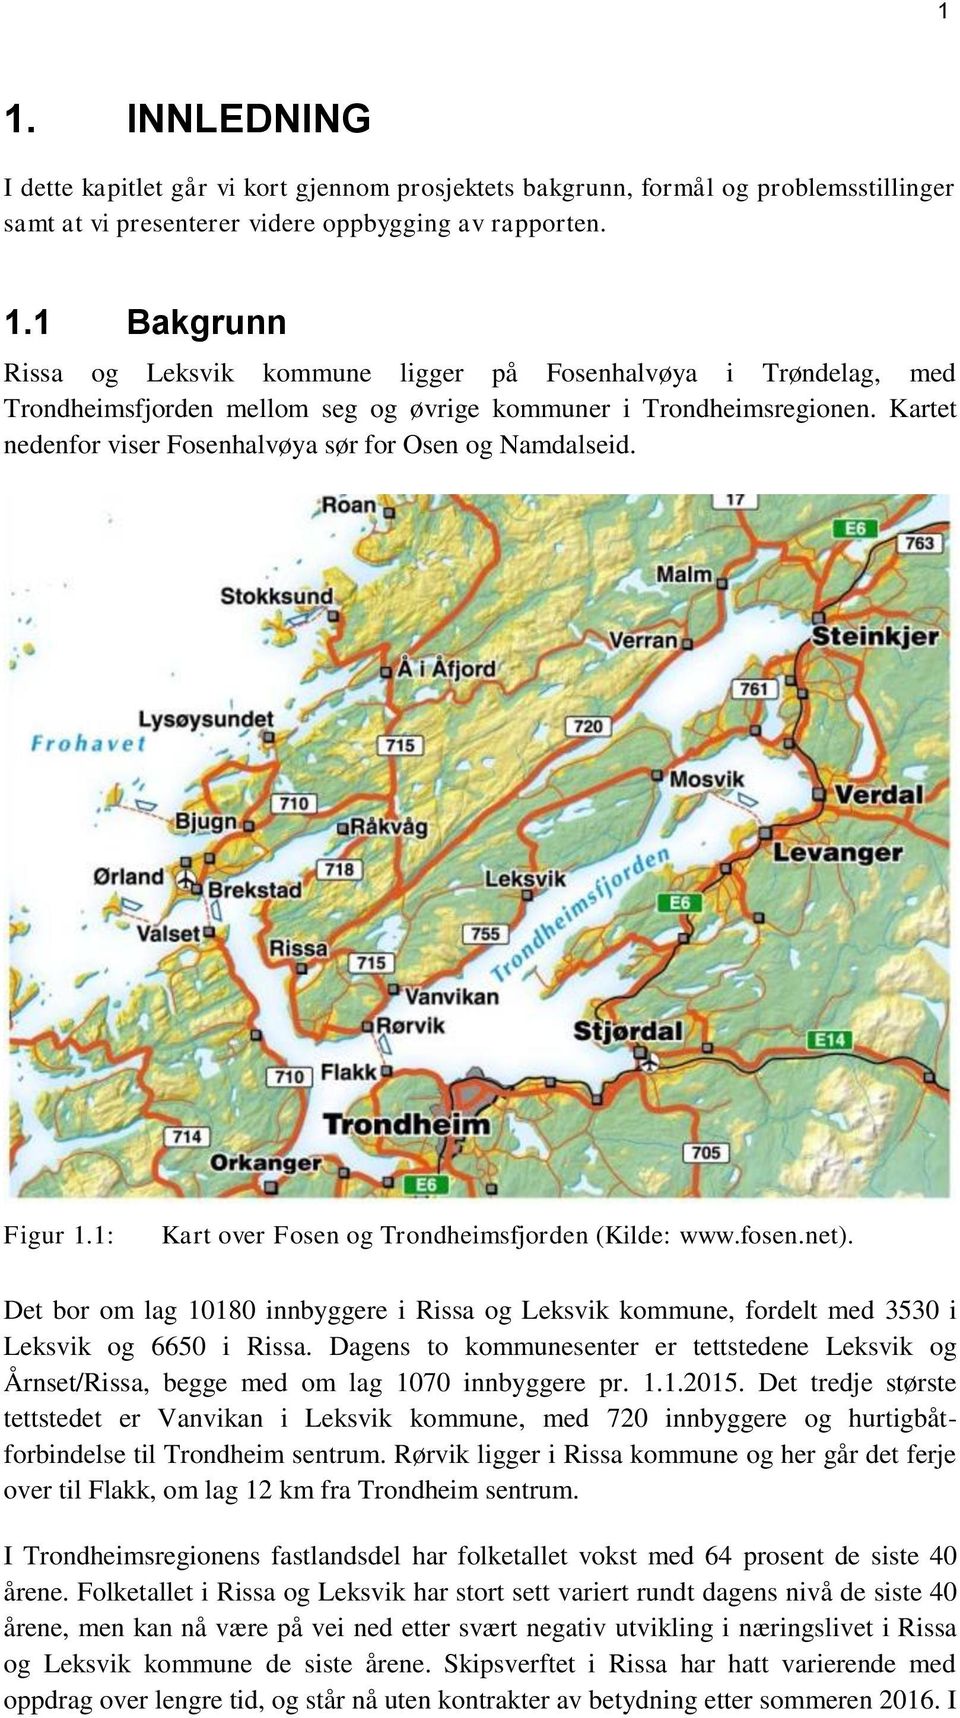 Det bor om lag 10180 innbyggere i Rissa og Leksvik kommune, fordelt med 3530 i Leksvik og 6650 i Rissa.